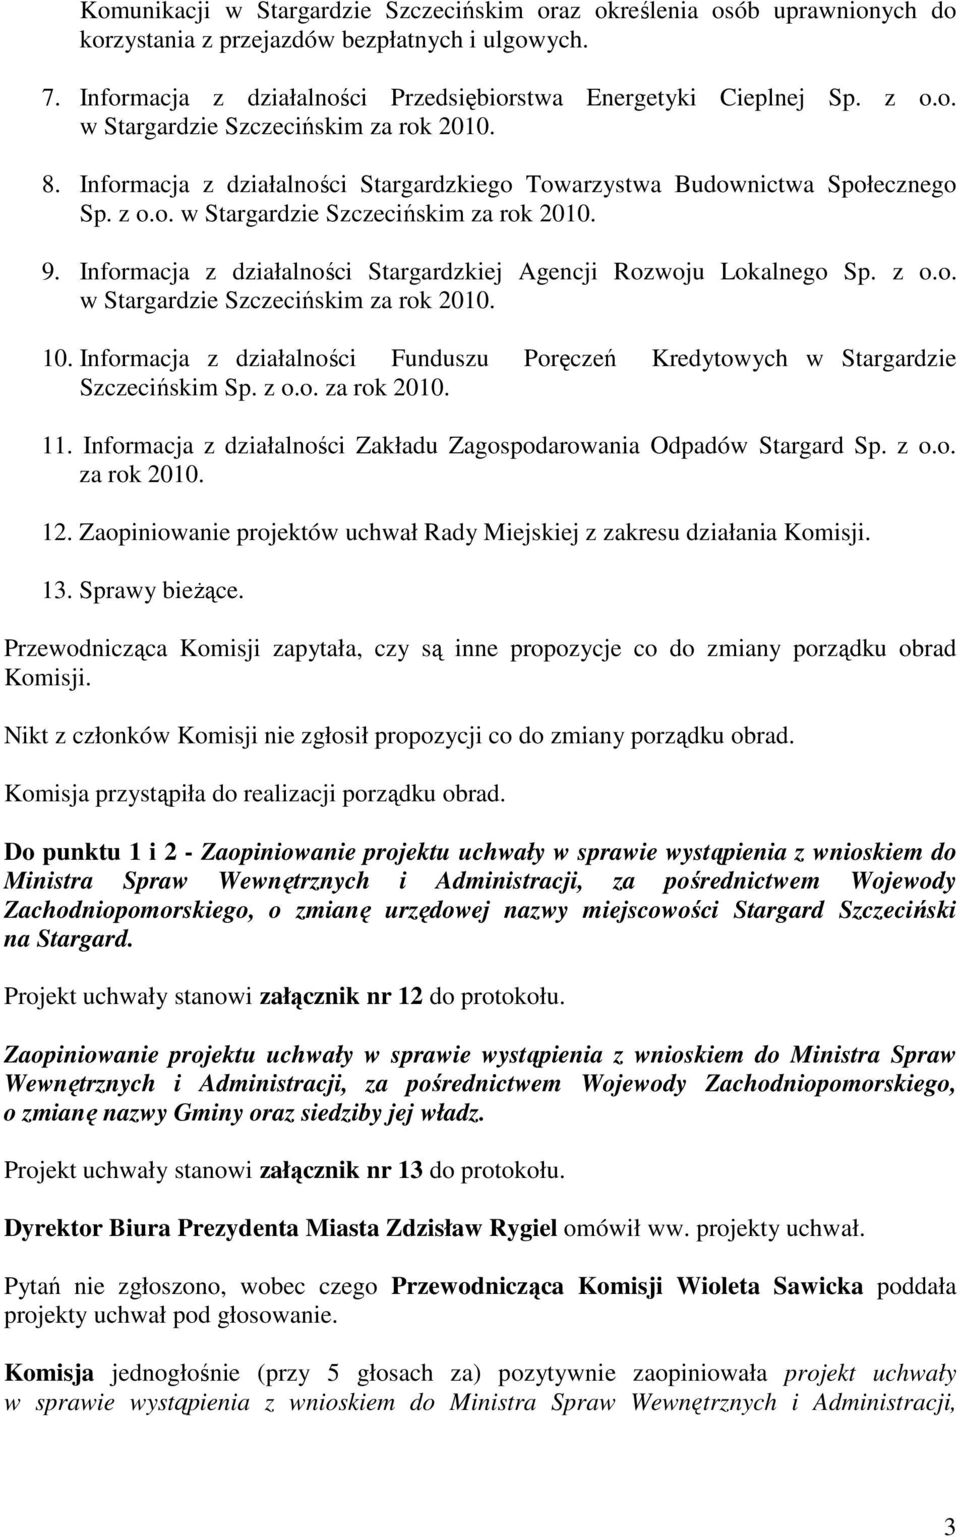 Informacja z działalności Stargardzkiej Agencji Rozwoju Lokalnego Sp. z o.o. w Stargardzie Szczecińskim za rok 2010. 10.